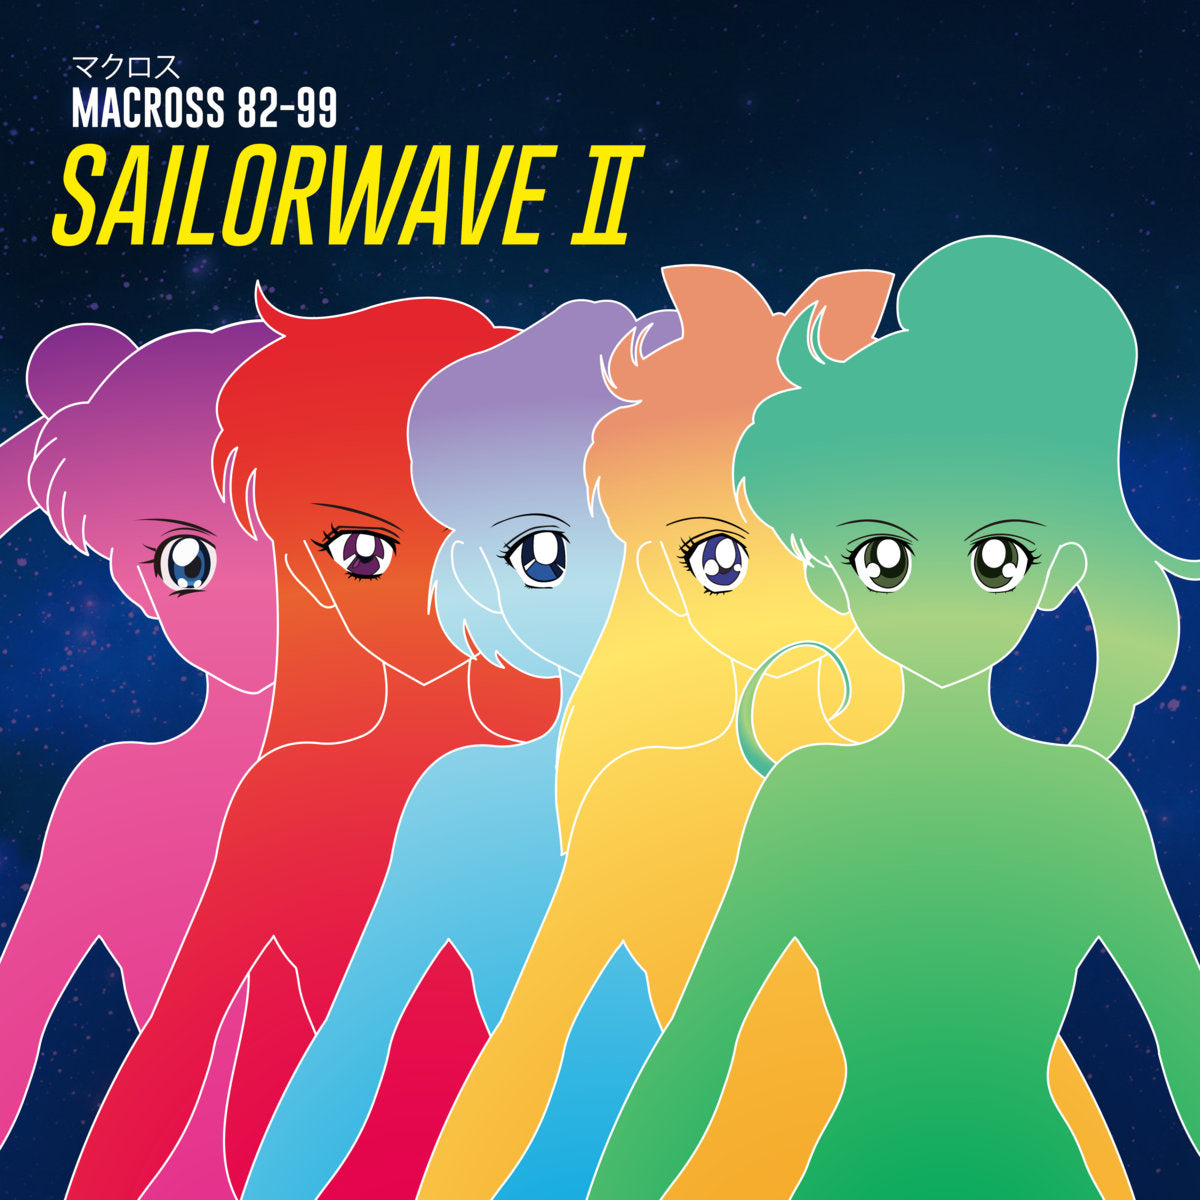 Macross82-99 SAILORWAVE II Album Released !